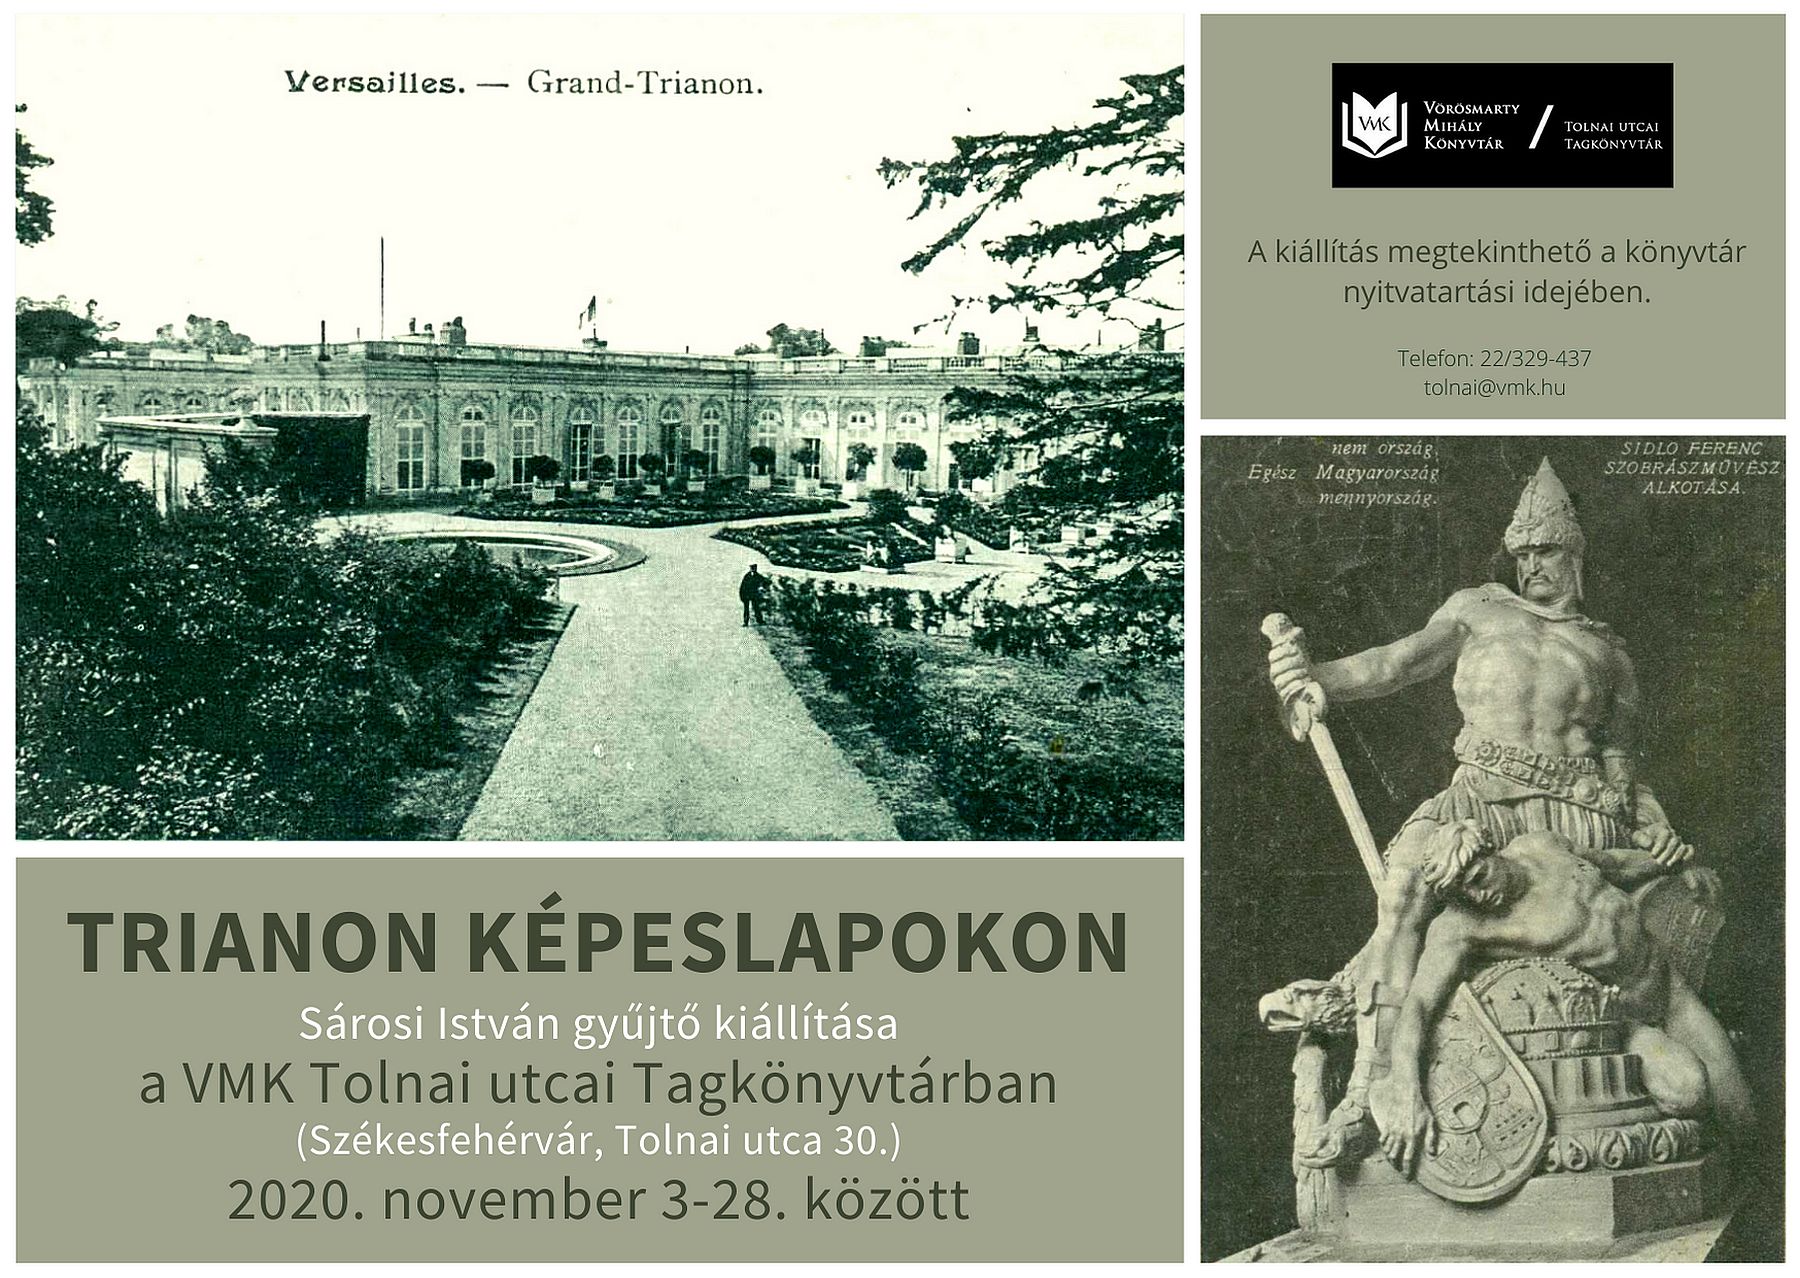 Trianon-képeslapok és díszes fafaragások kiállítása a könyvtárakban